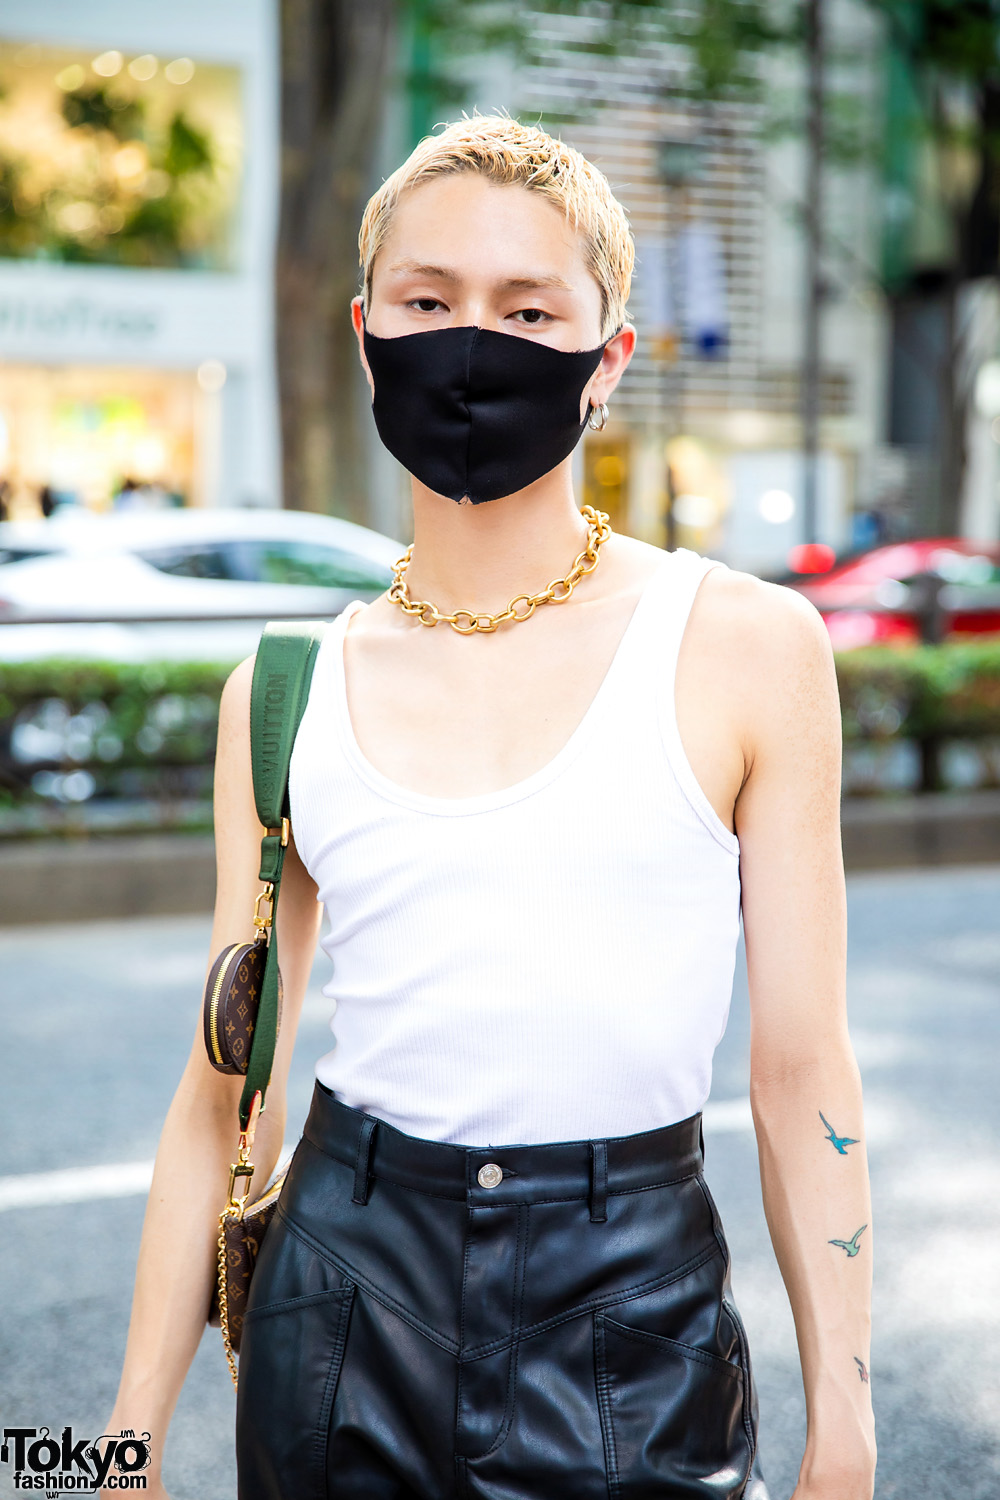 Tokyo Street Style w/ Bleached Hair, Tattoos, Single Hoop Earring